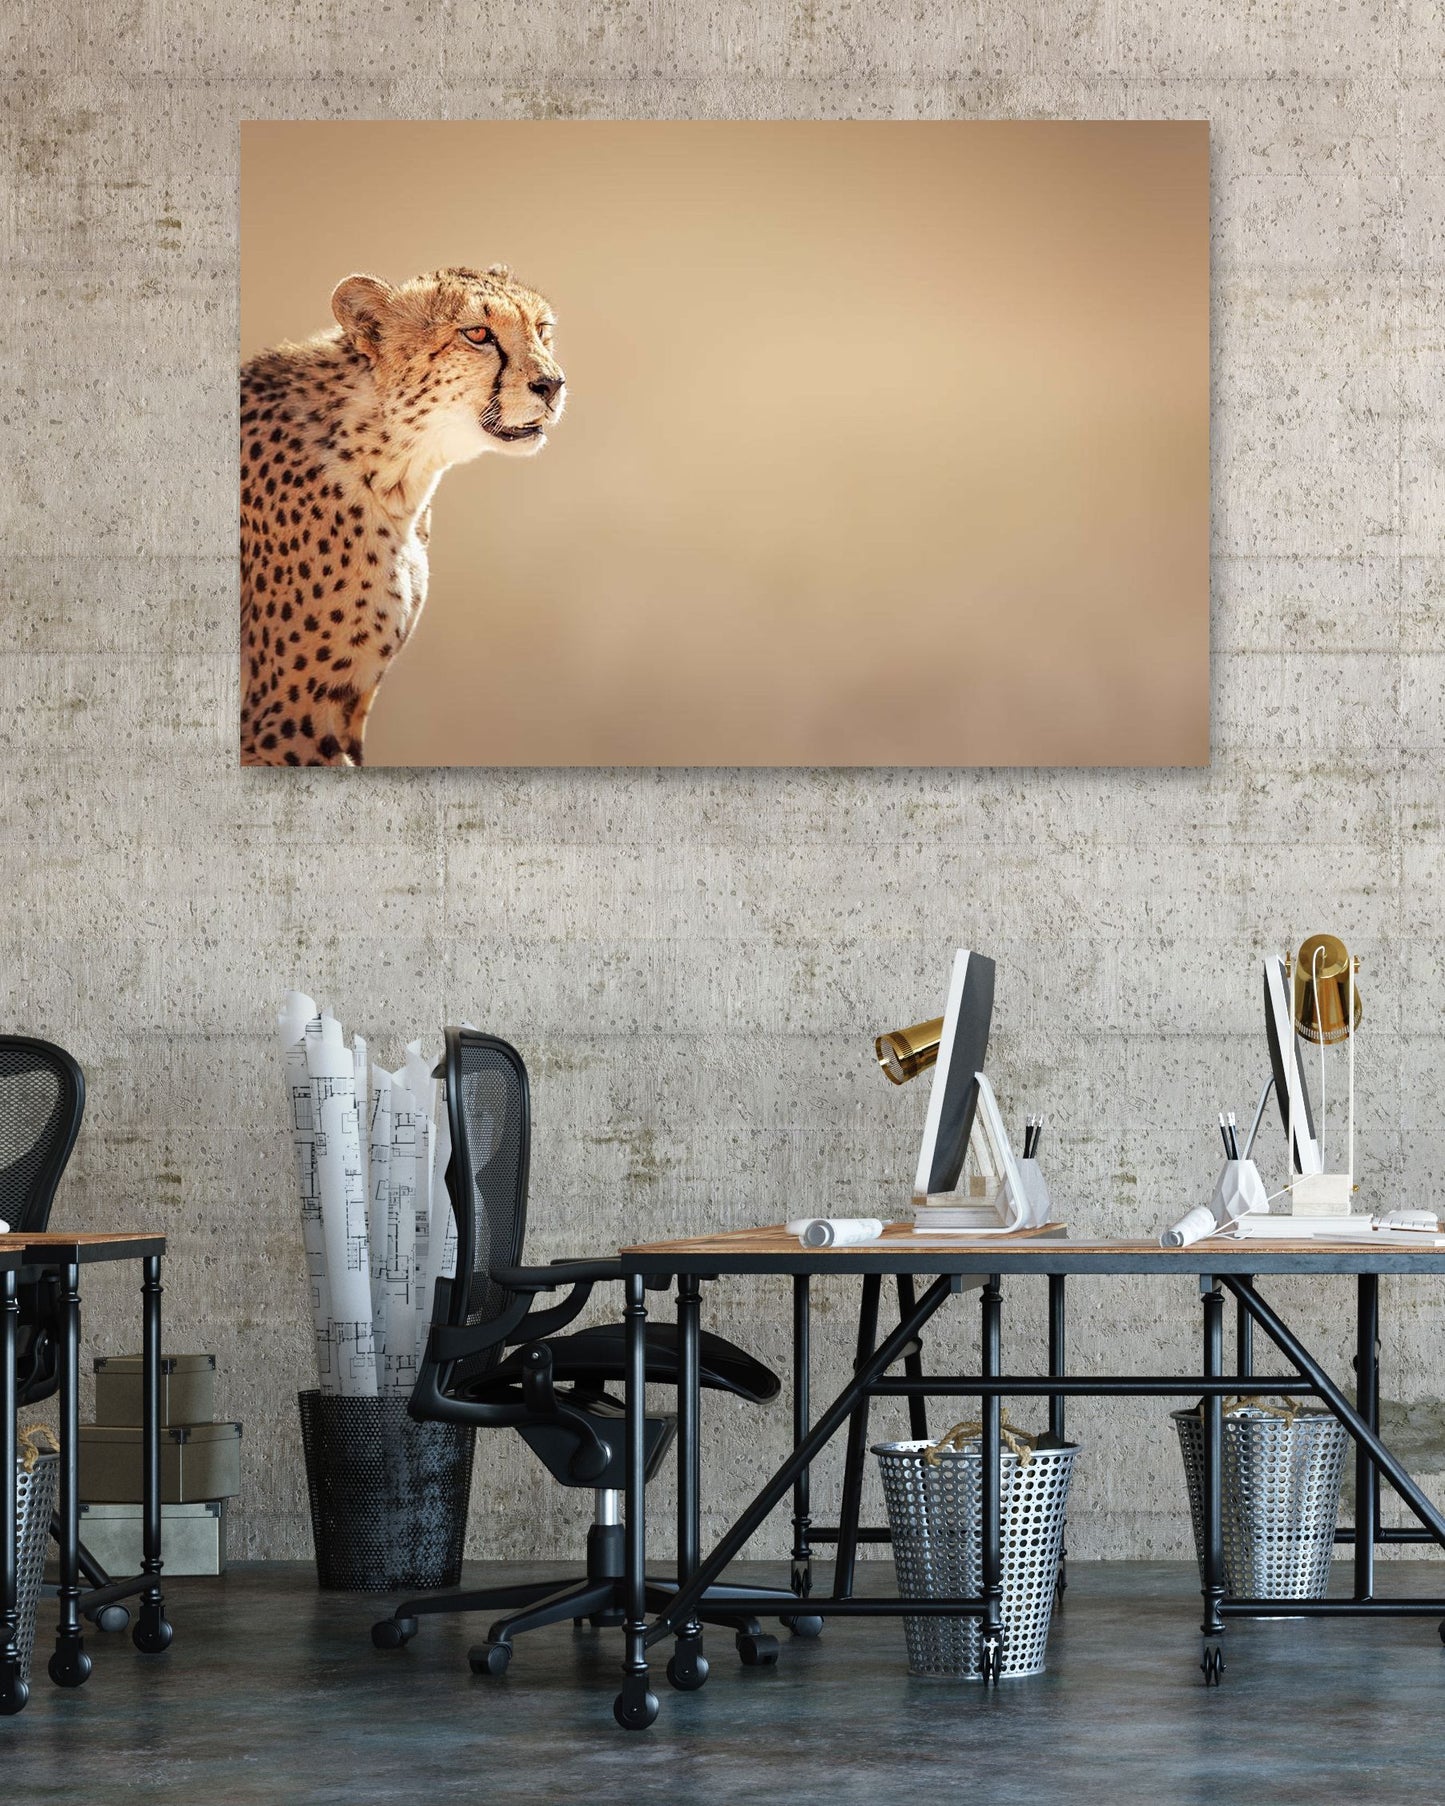 Cheetah portrait 1 - @chusna